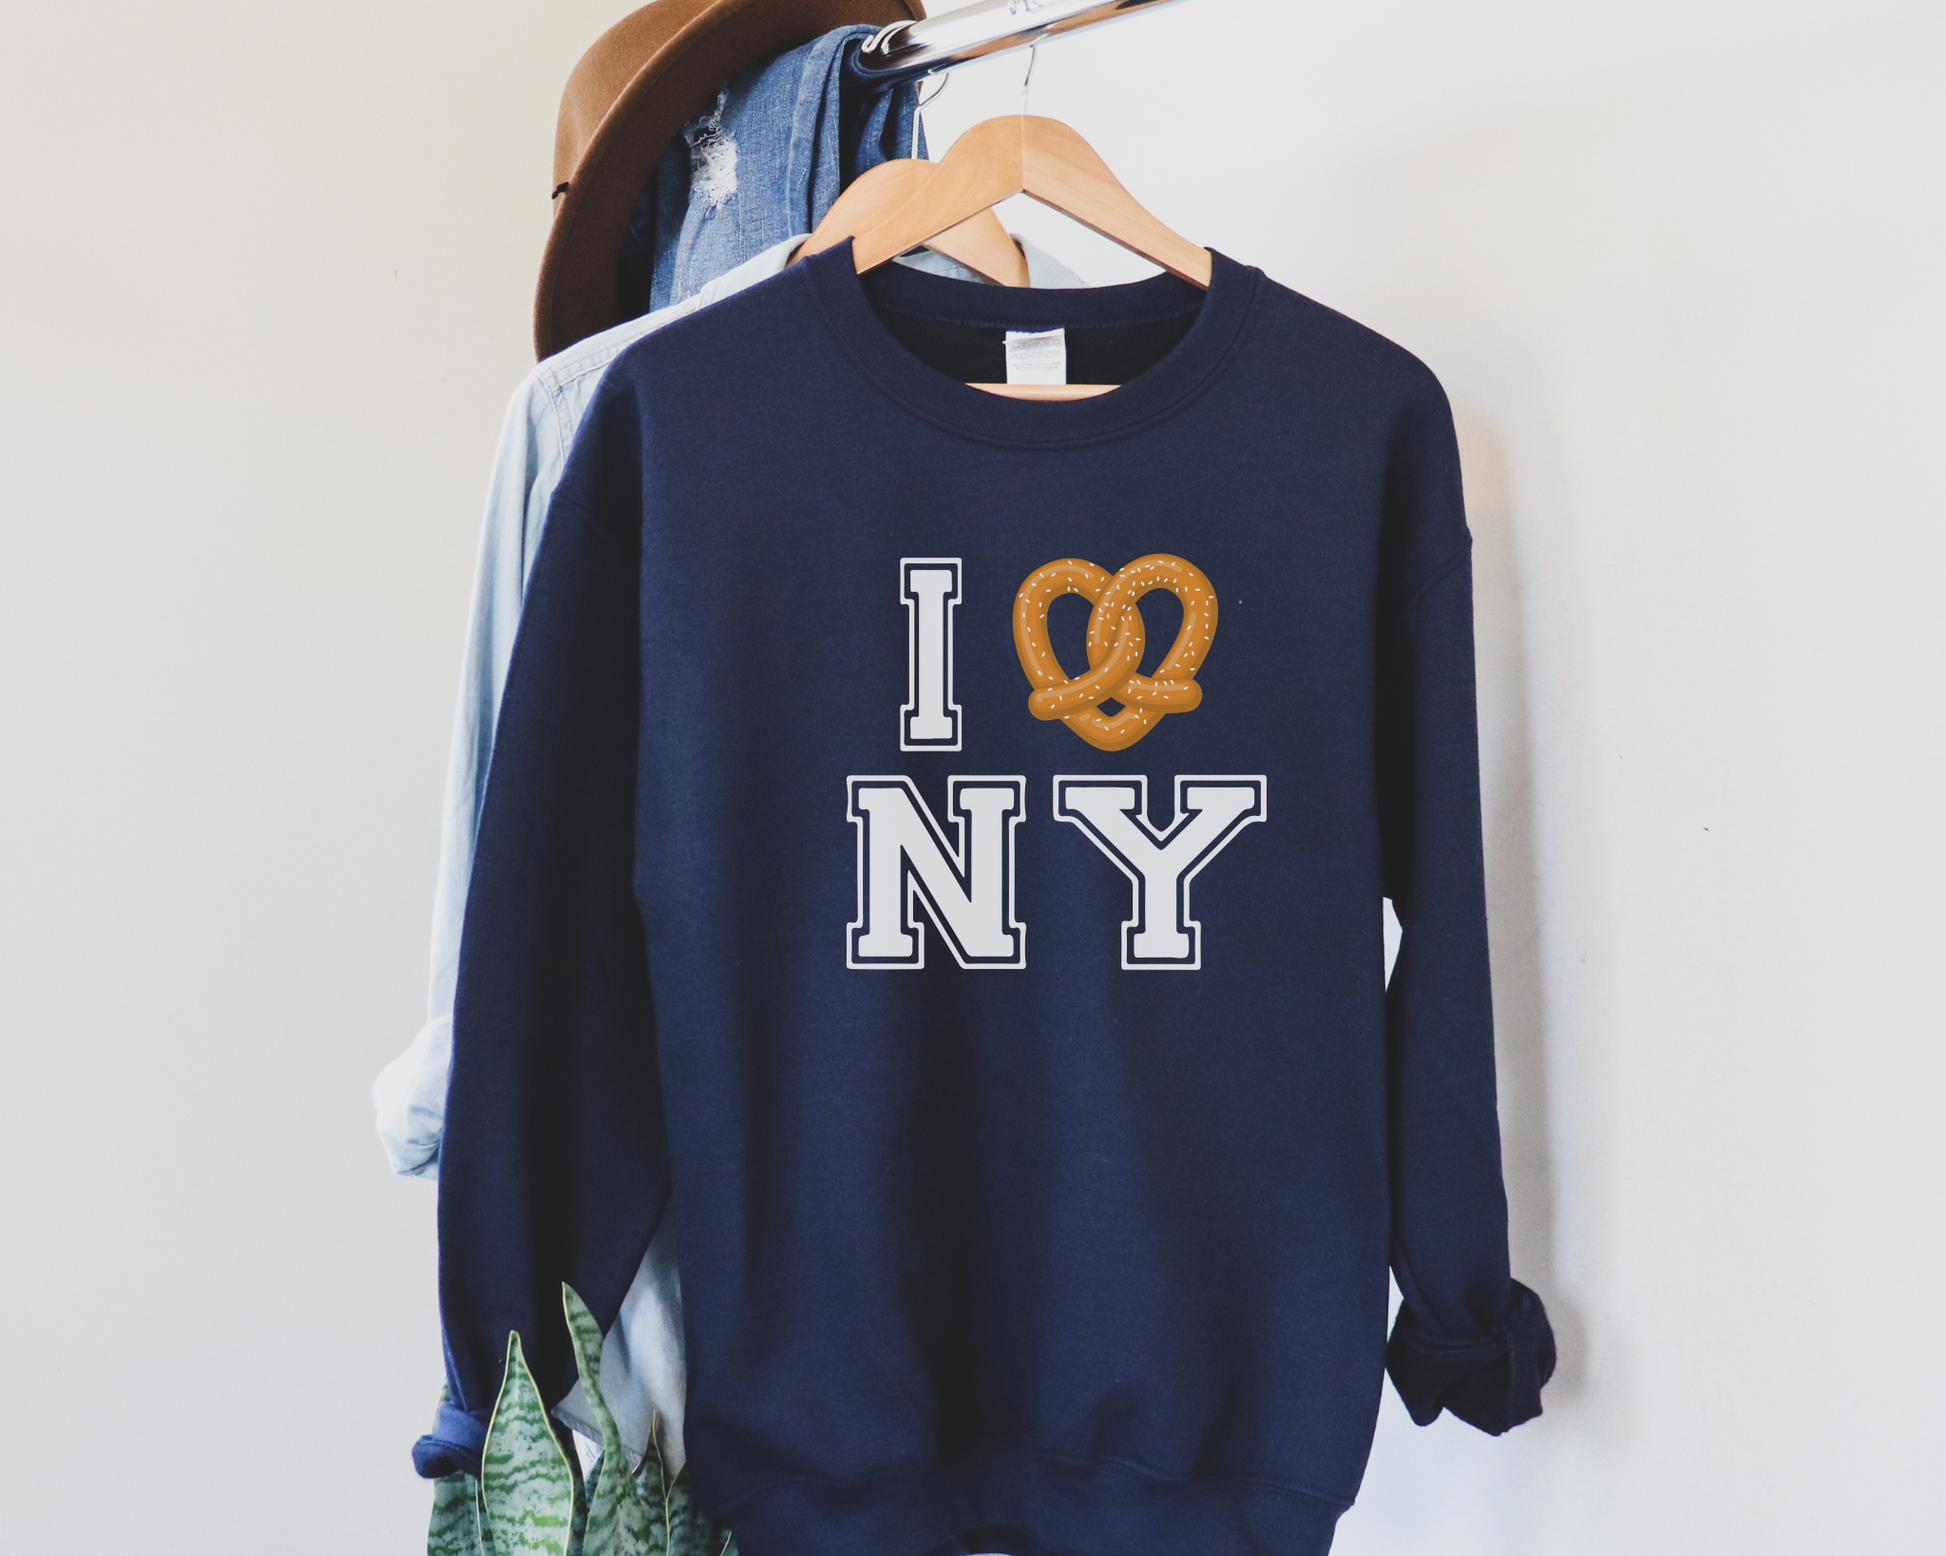 I Pretzel (Love) New York Sweatshirt in Navy, hanging.